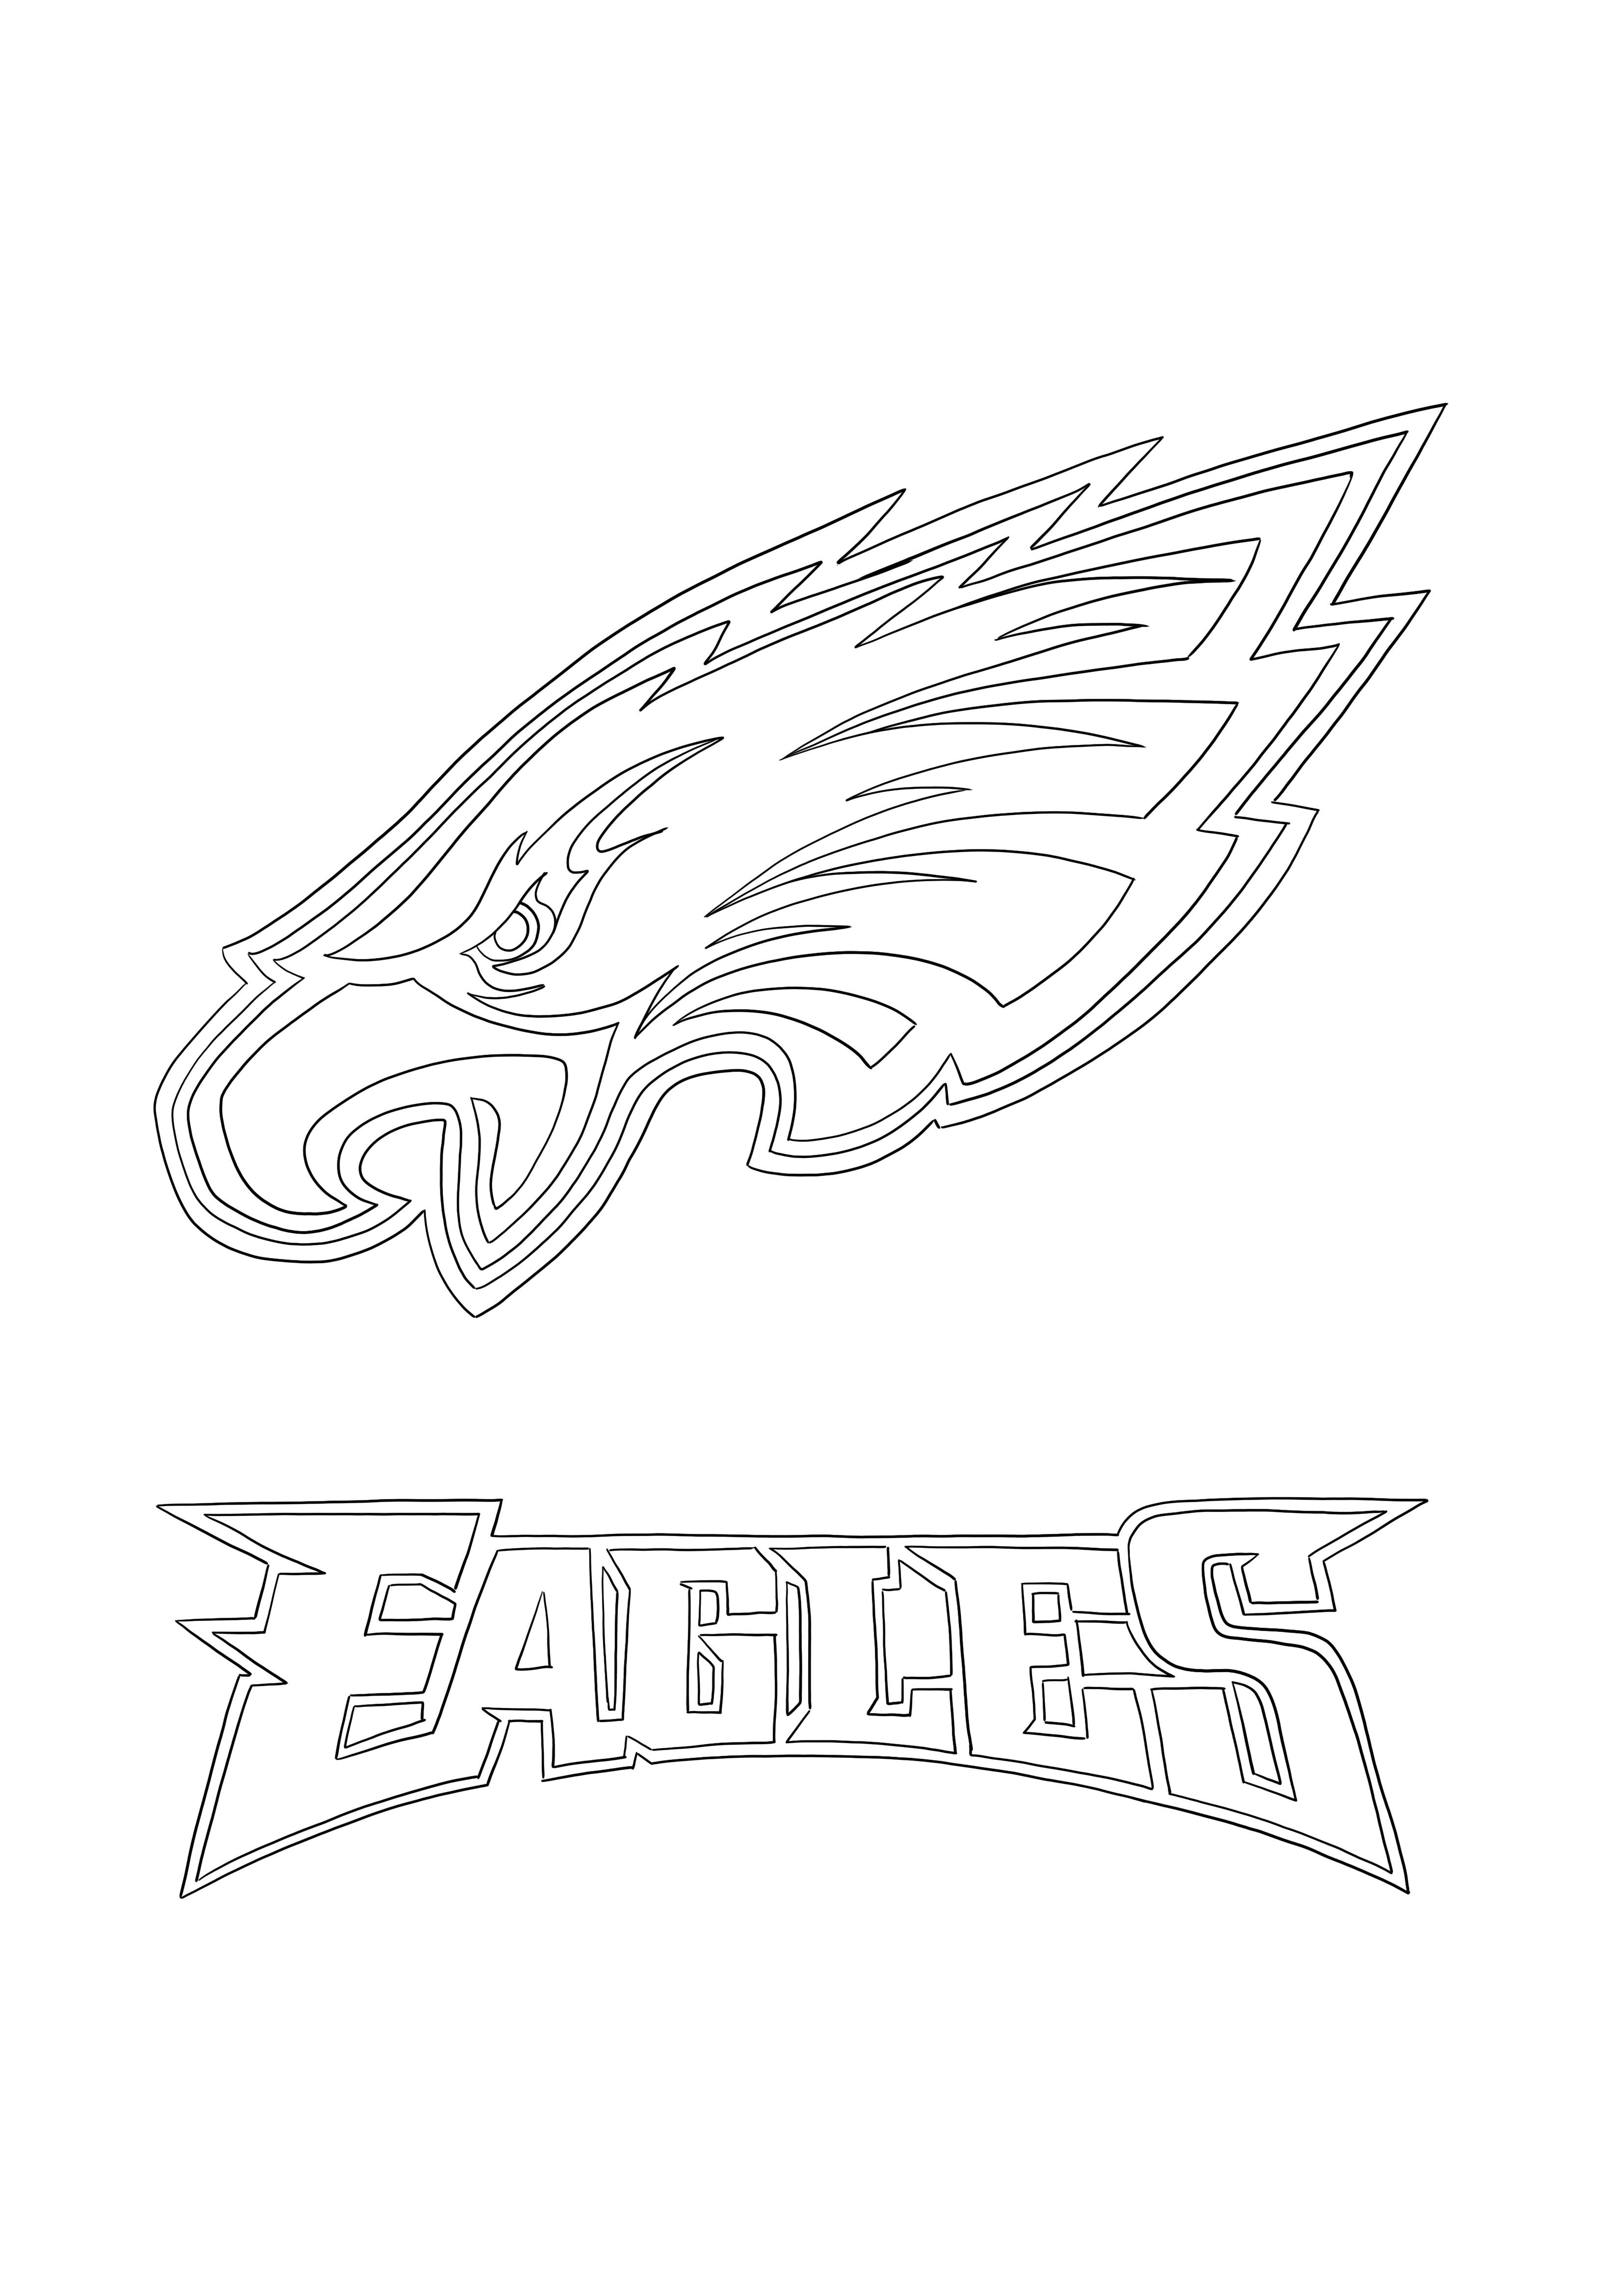 Philadelphia Eagles-logo om in te kleuren en af te drukken voor kinderen kleurplaat